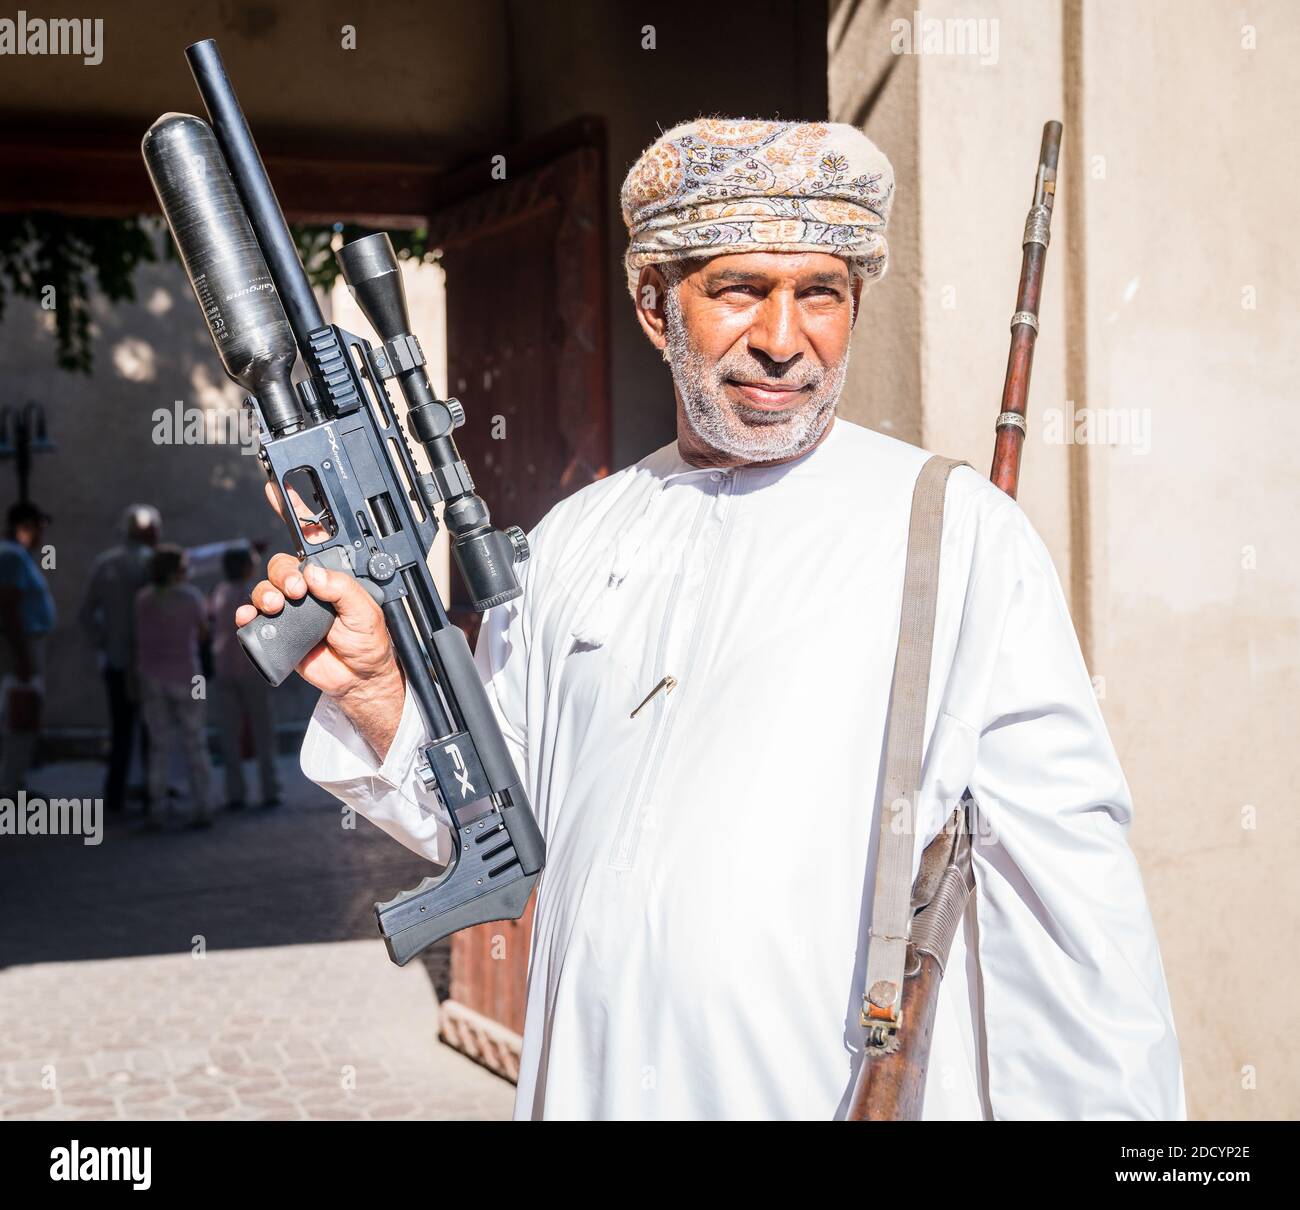 Nizwa, Oman, December 2, 2016: A man is displaying an air gun at the Friday gun market in Nizwa, Oman Stock Photo